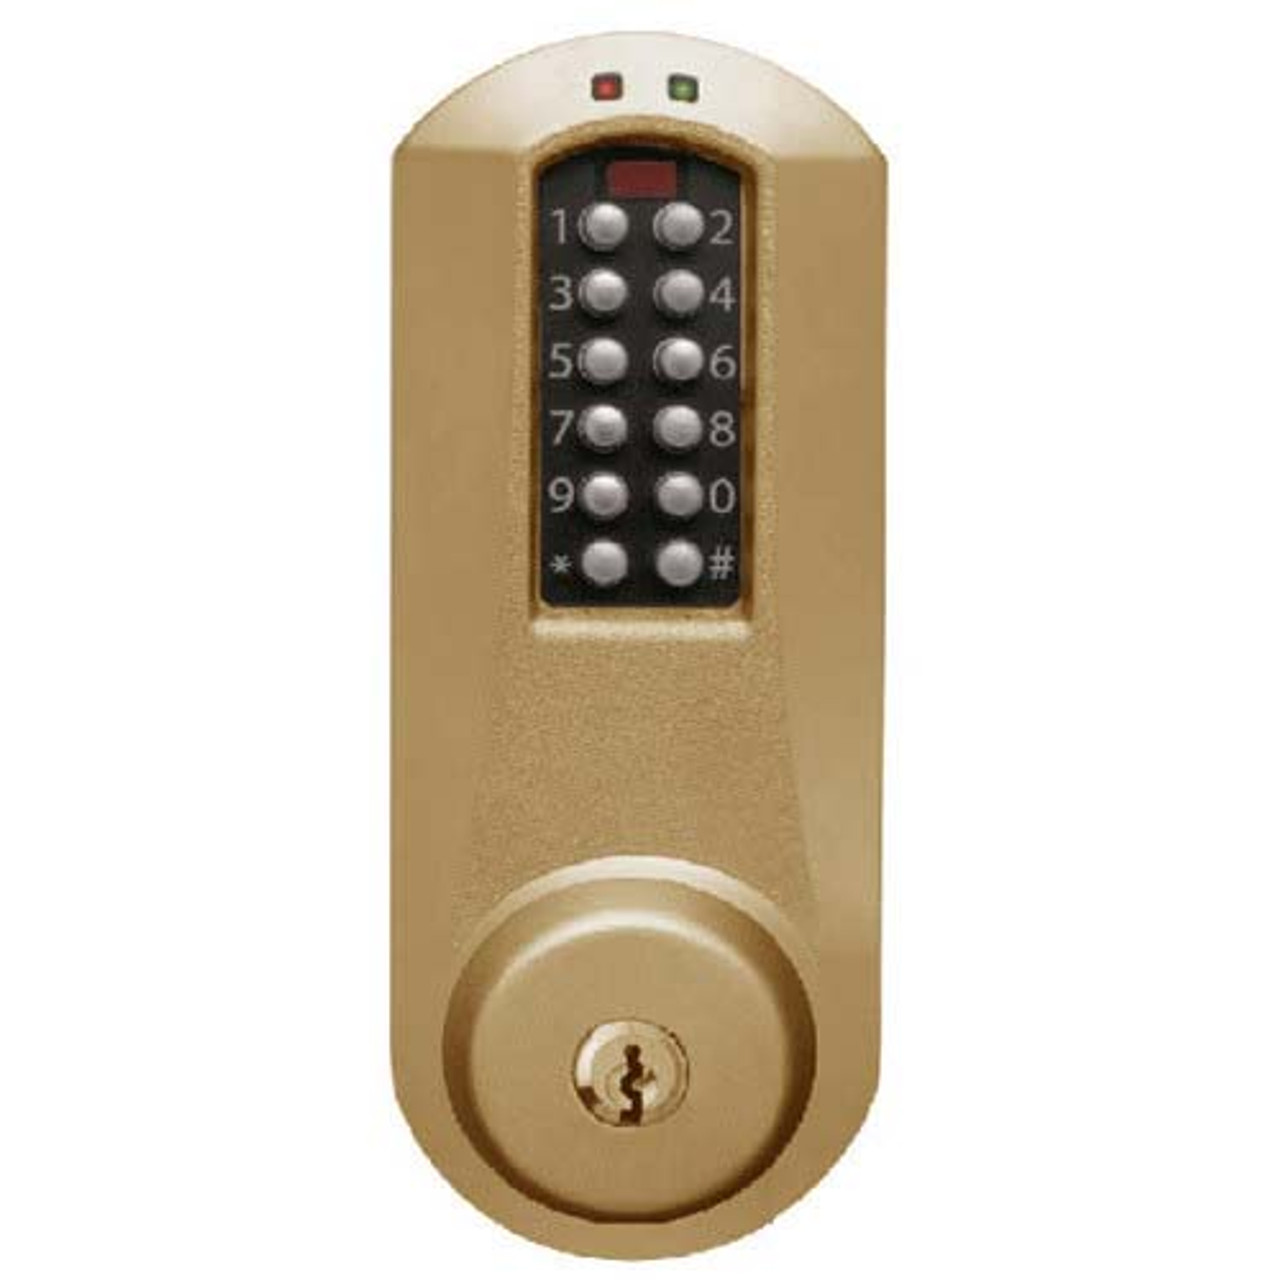 Eplex Pushbutton Lock in Dark Bronze with Brass Accents Finish